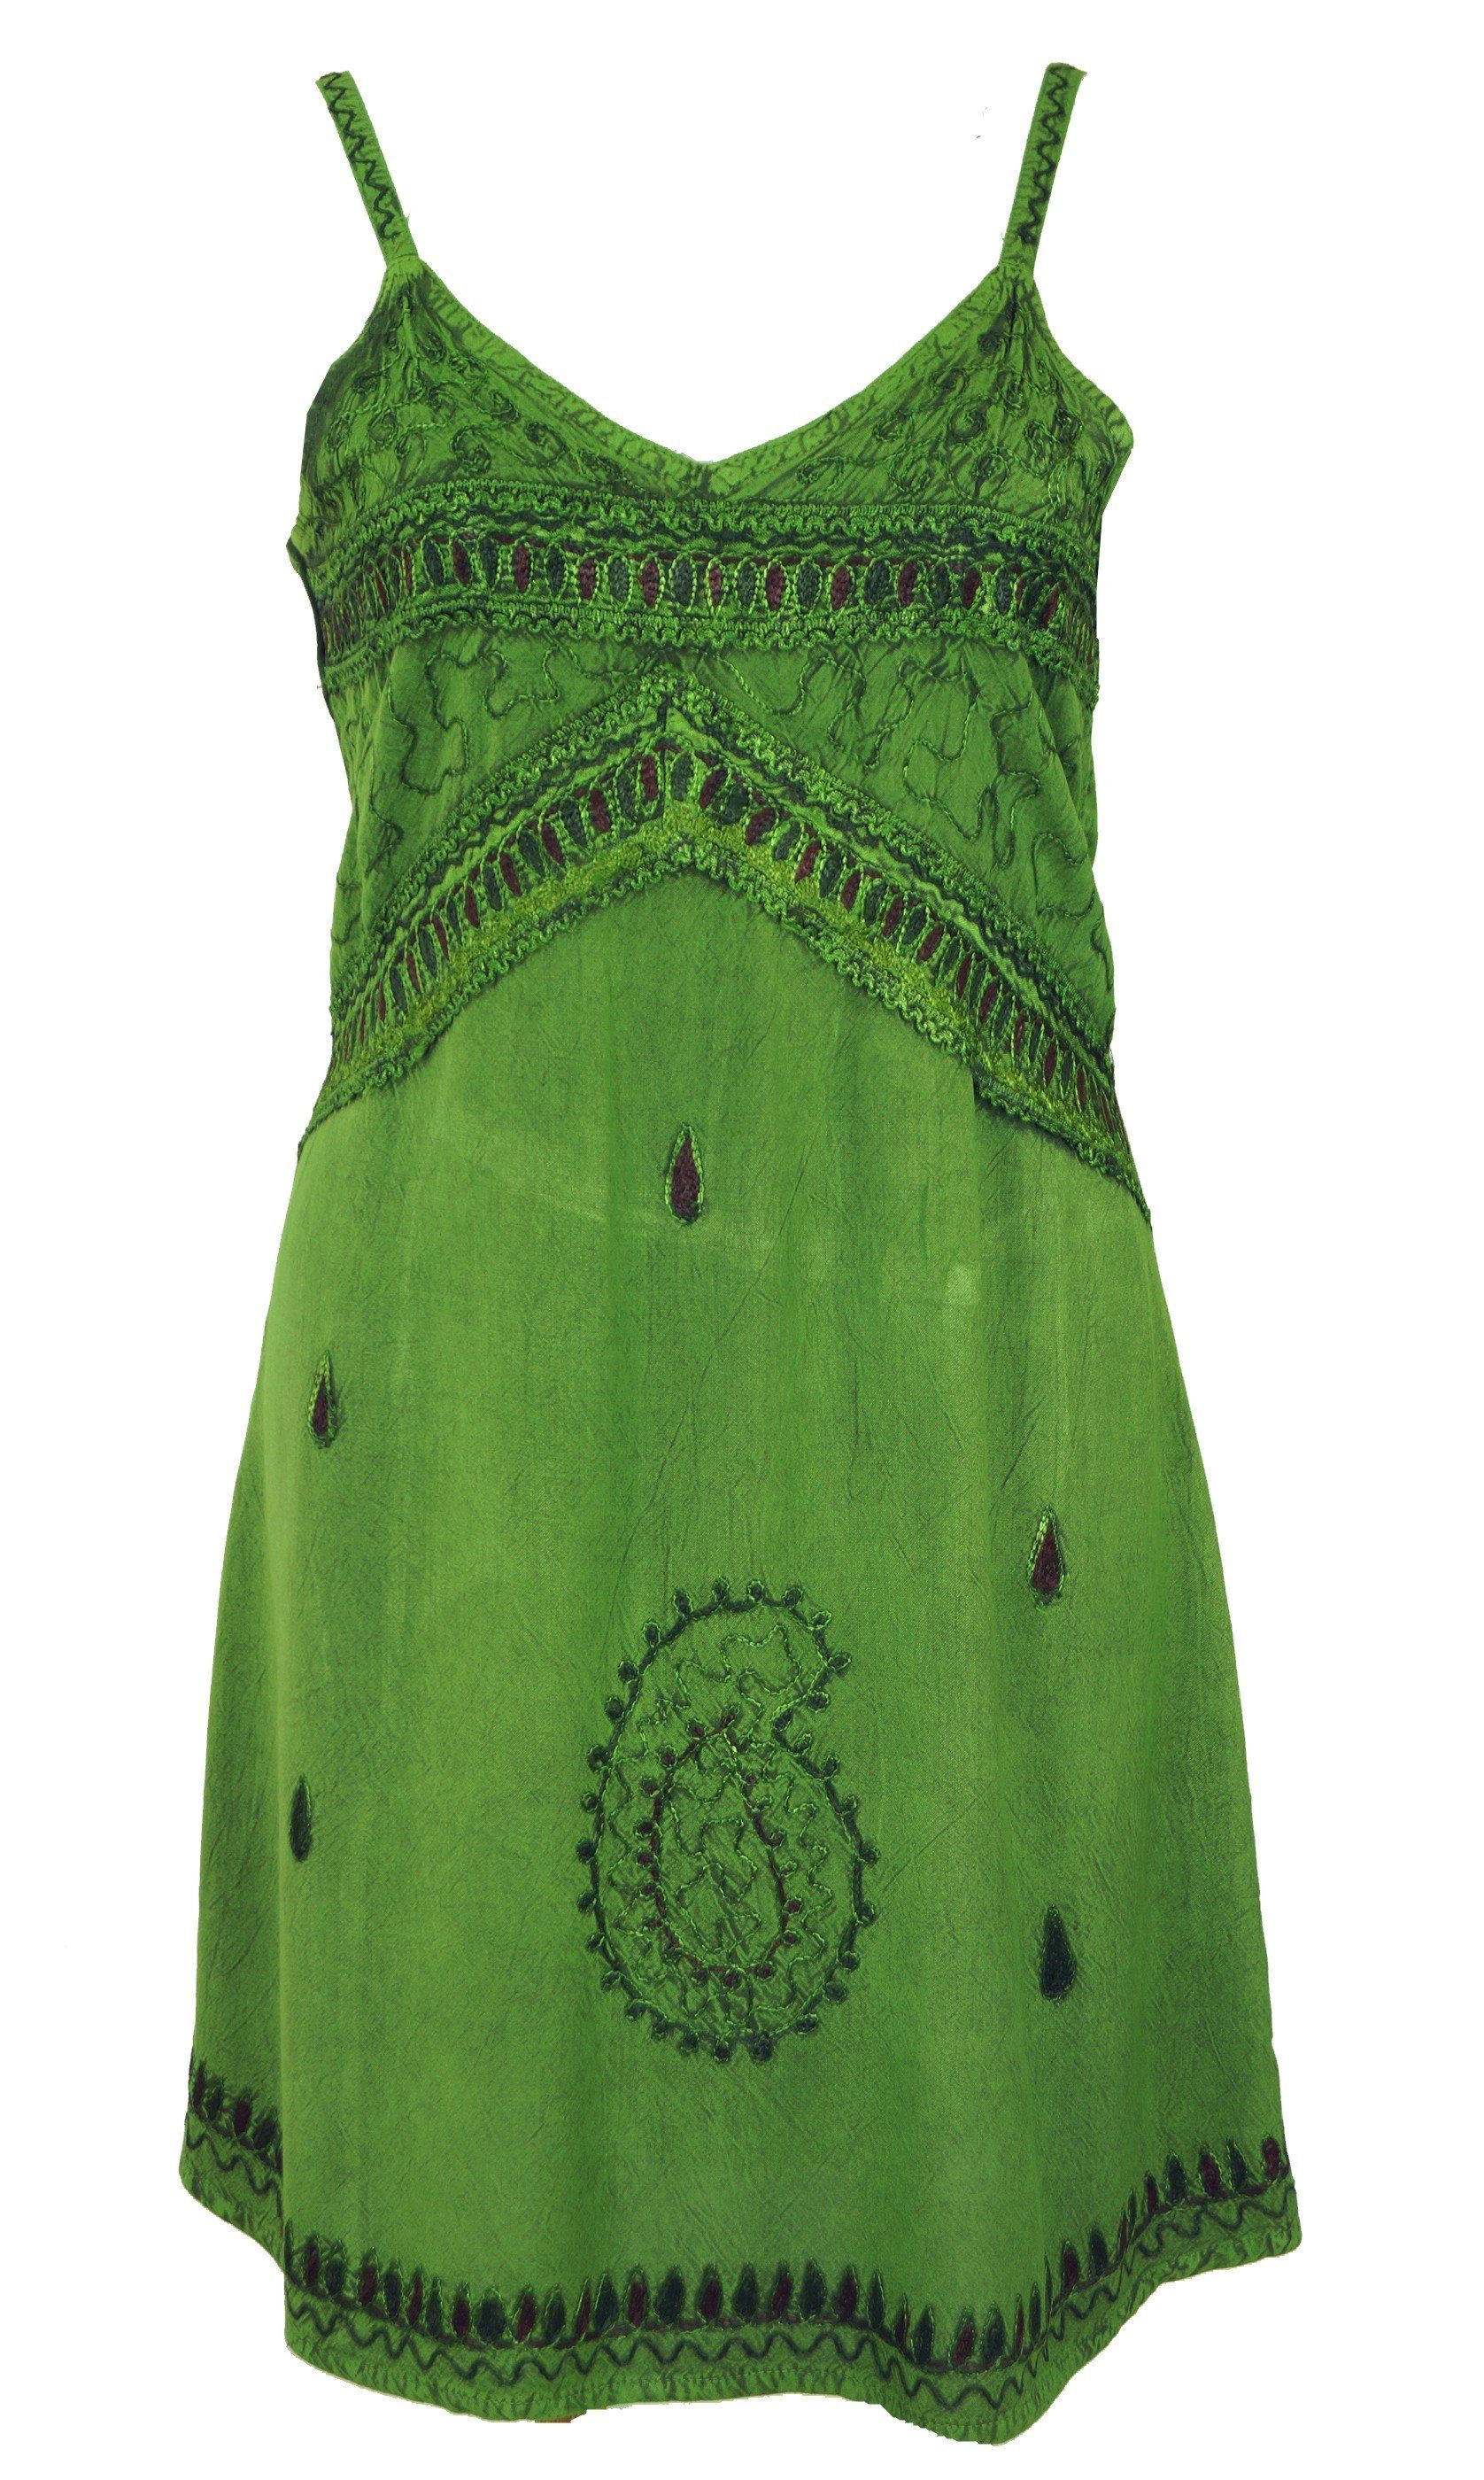 Guru-Shop Midikleid Besticktes indisches Kleid, Boho Minikleid -.. alternative Bekleidung grün Design 1